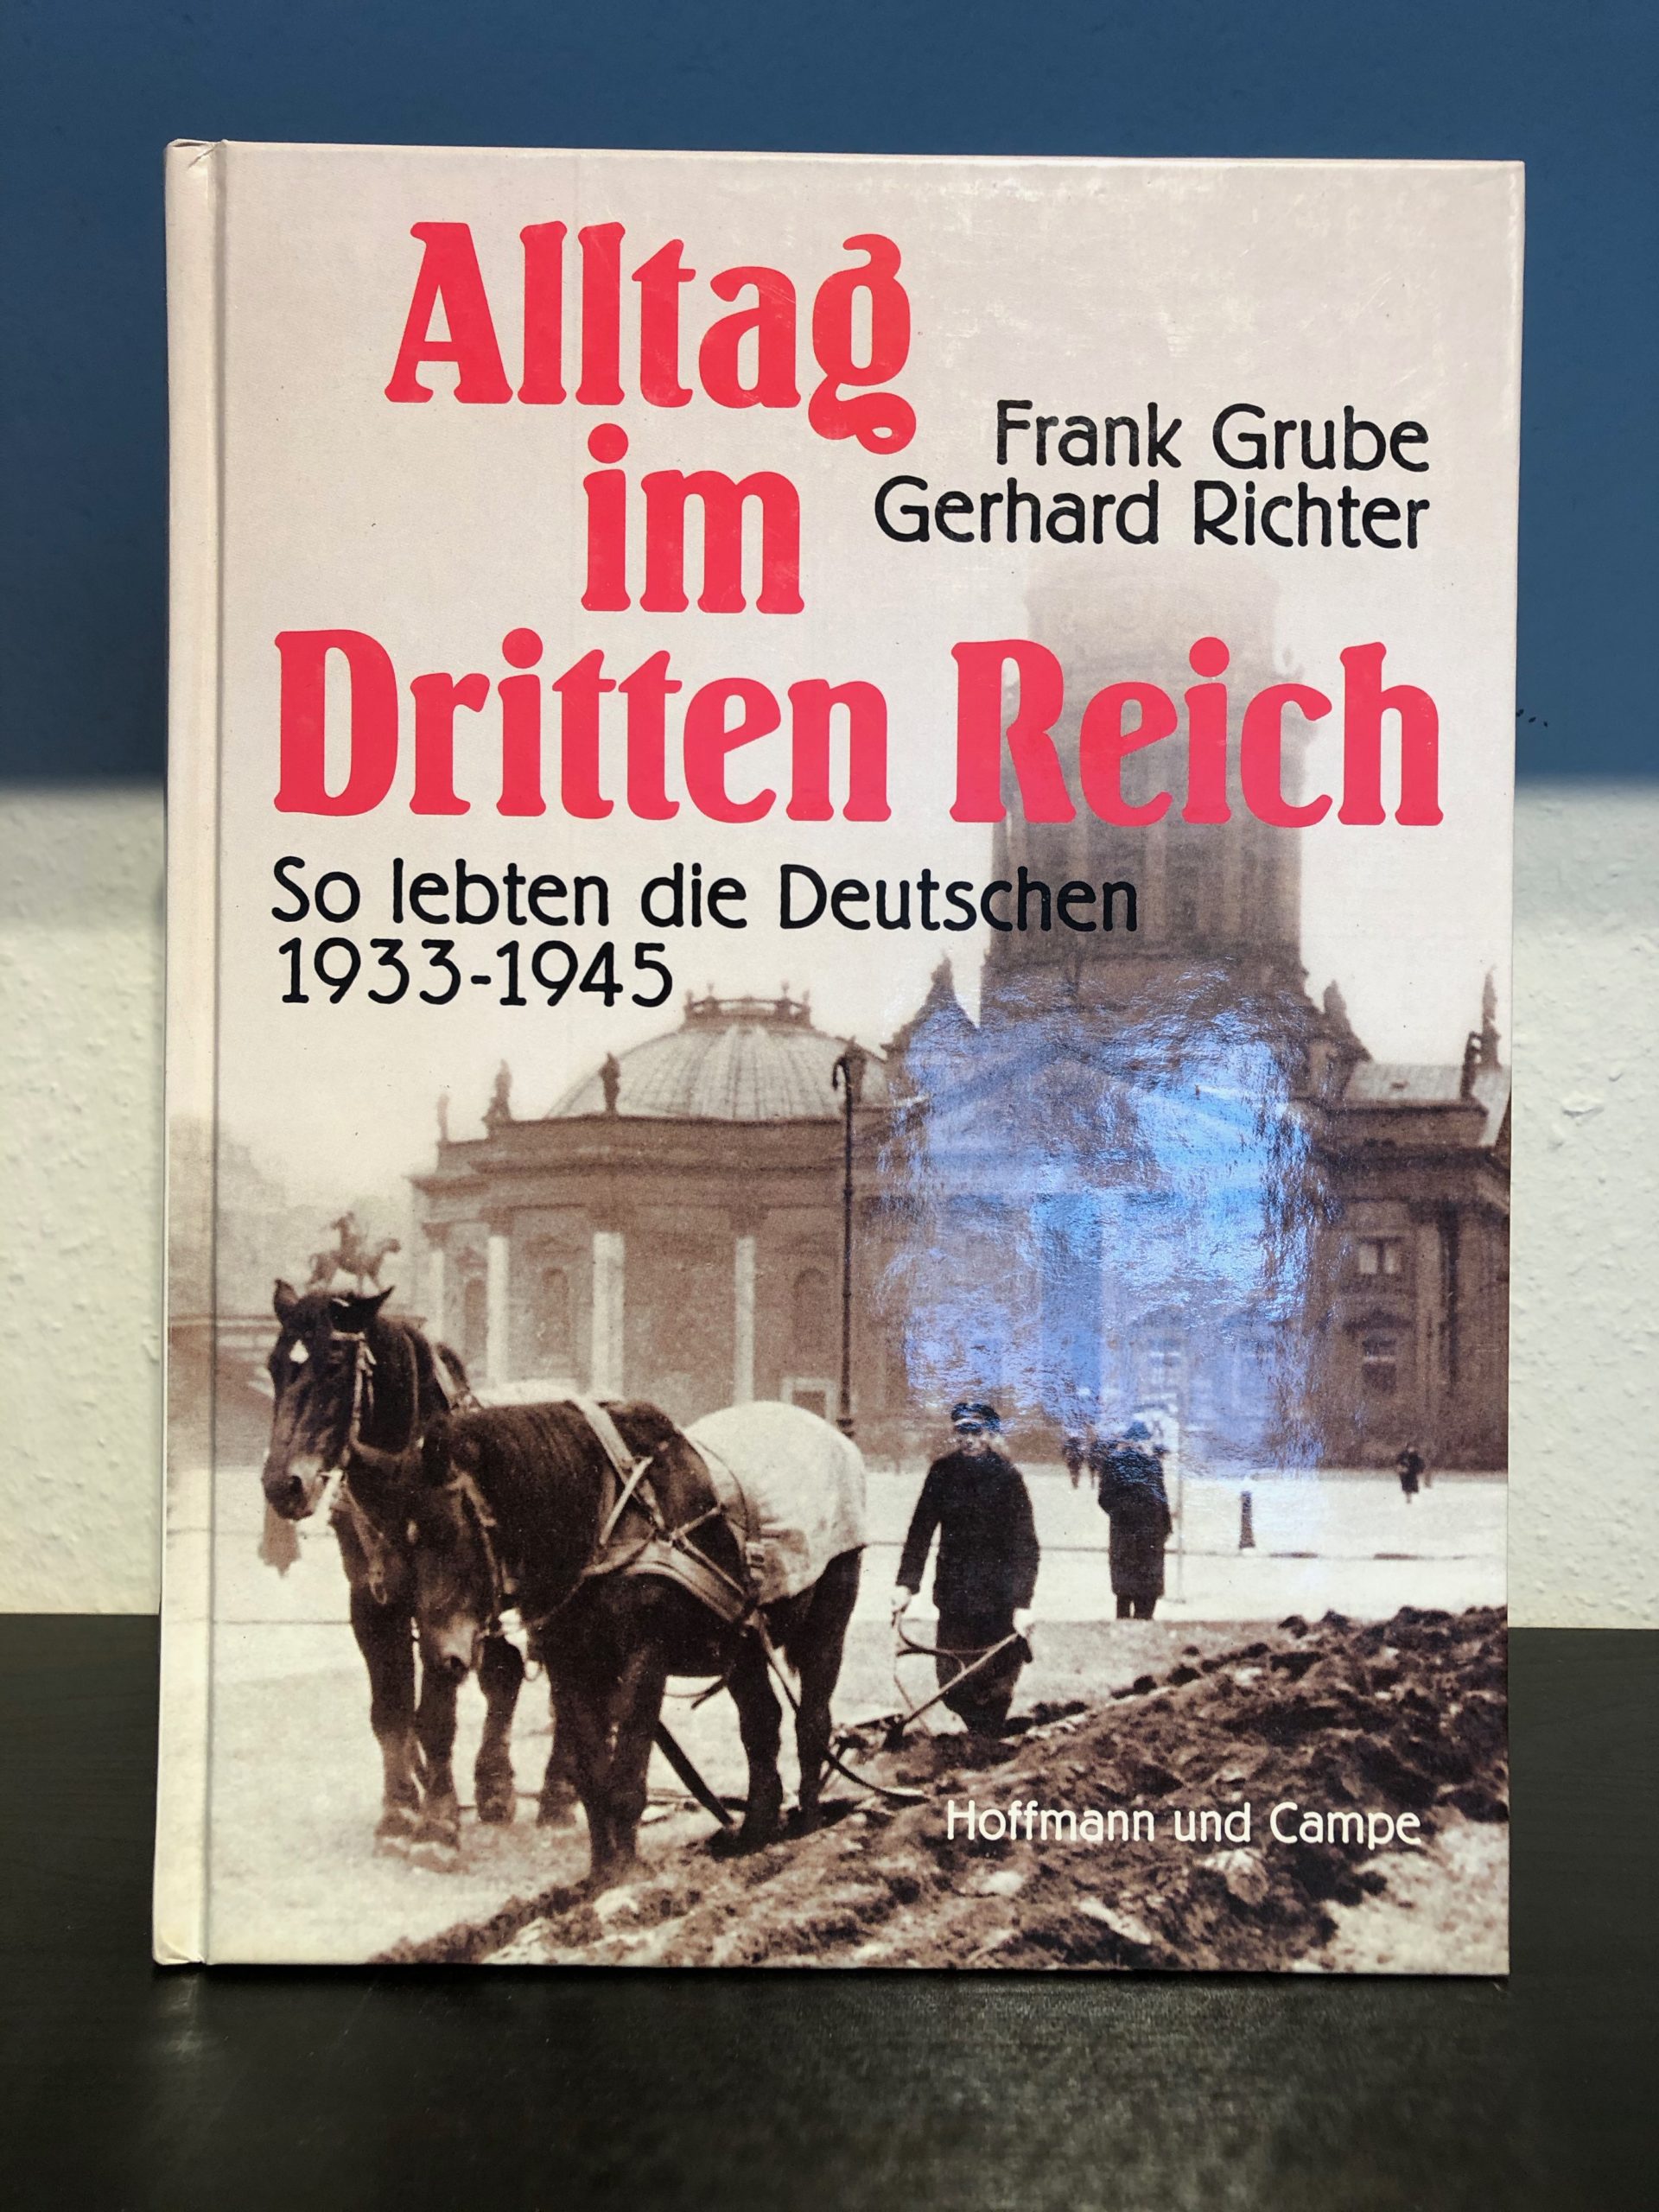 Alltag im Dritten Reich - So lebten die Deutschen 1933-1945 - Frank Grube, Gerhard Richter